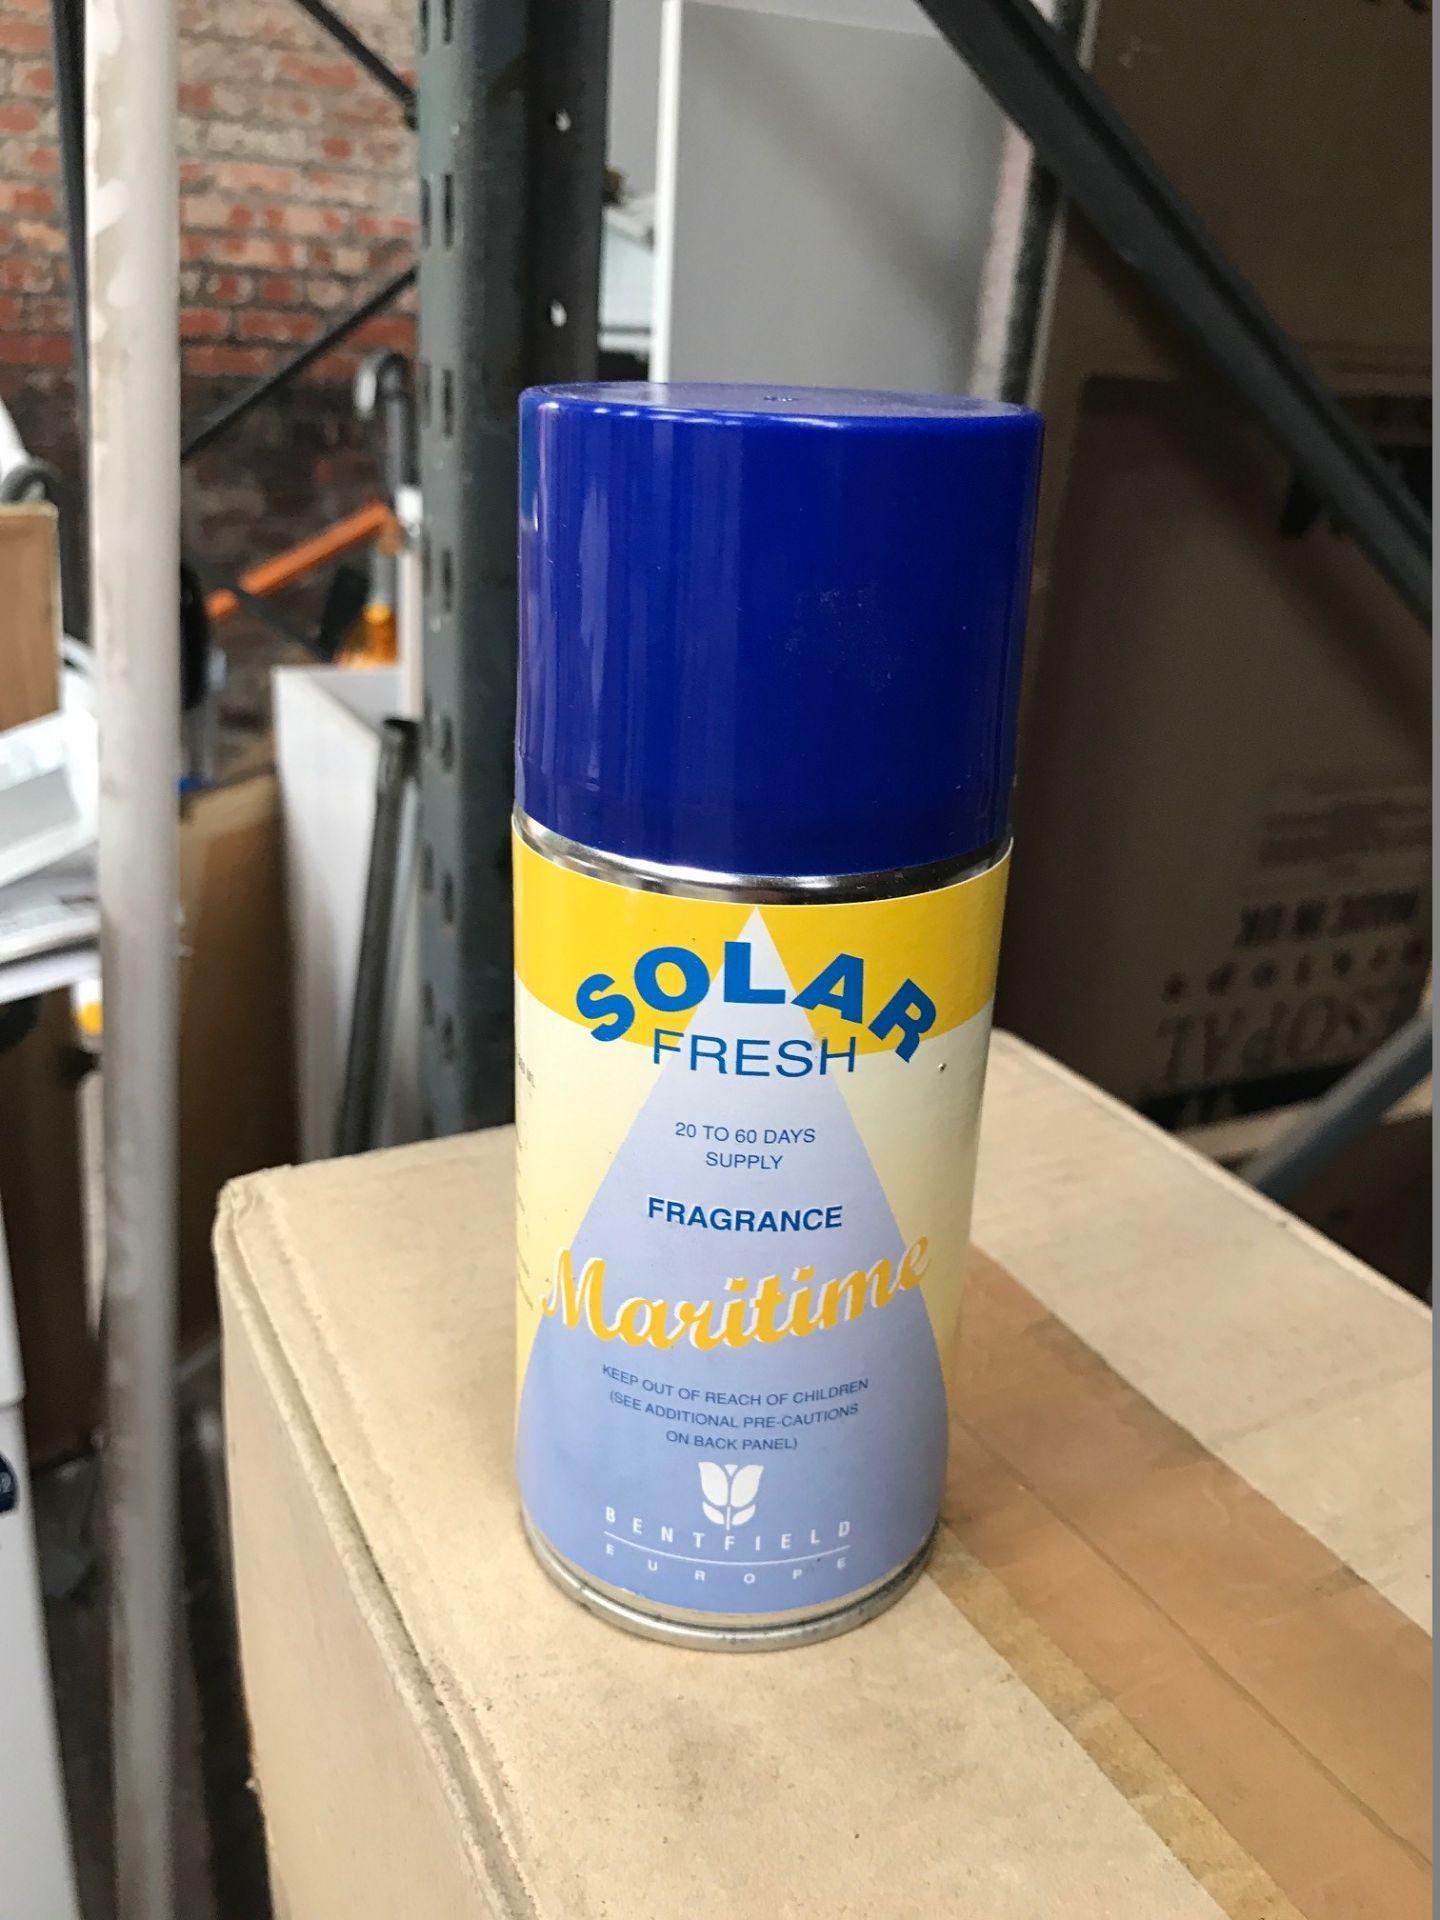 24 x Cans of Solar Fresh Air Freshener